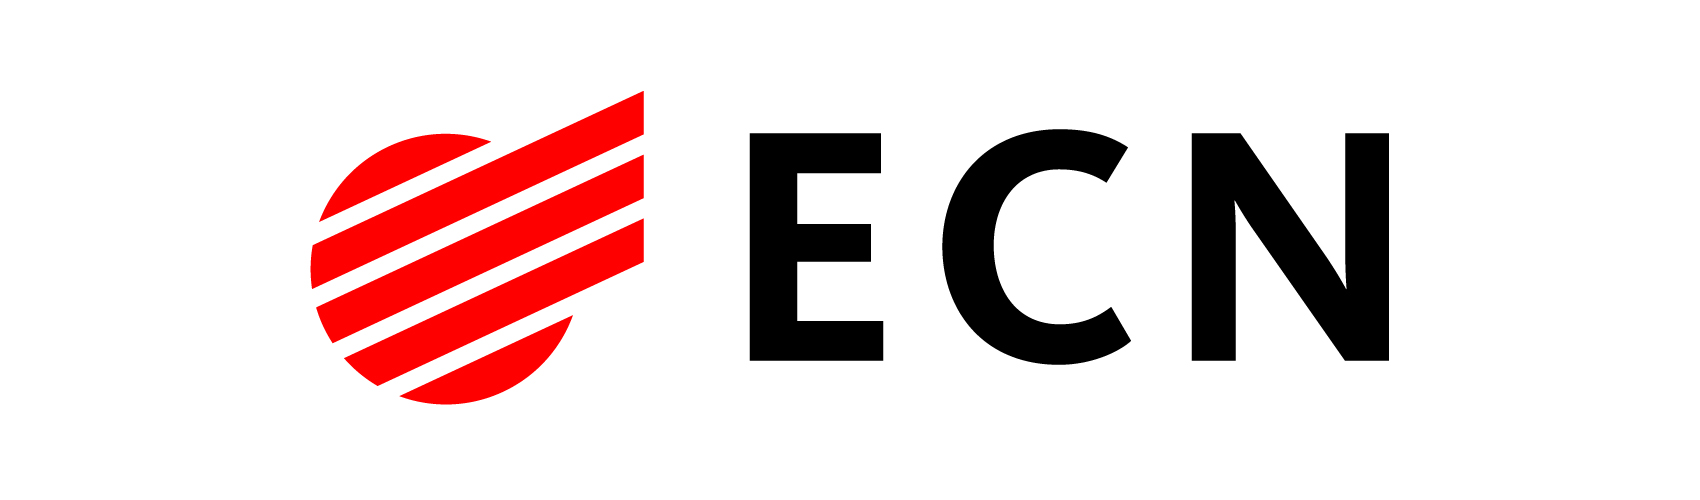 logo ECN rgb